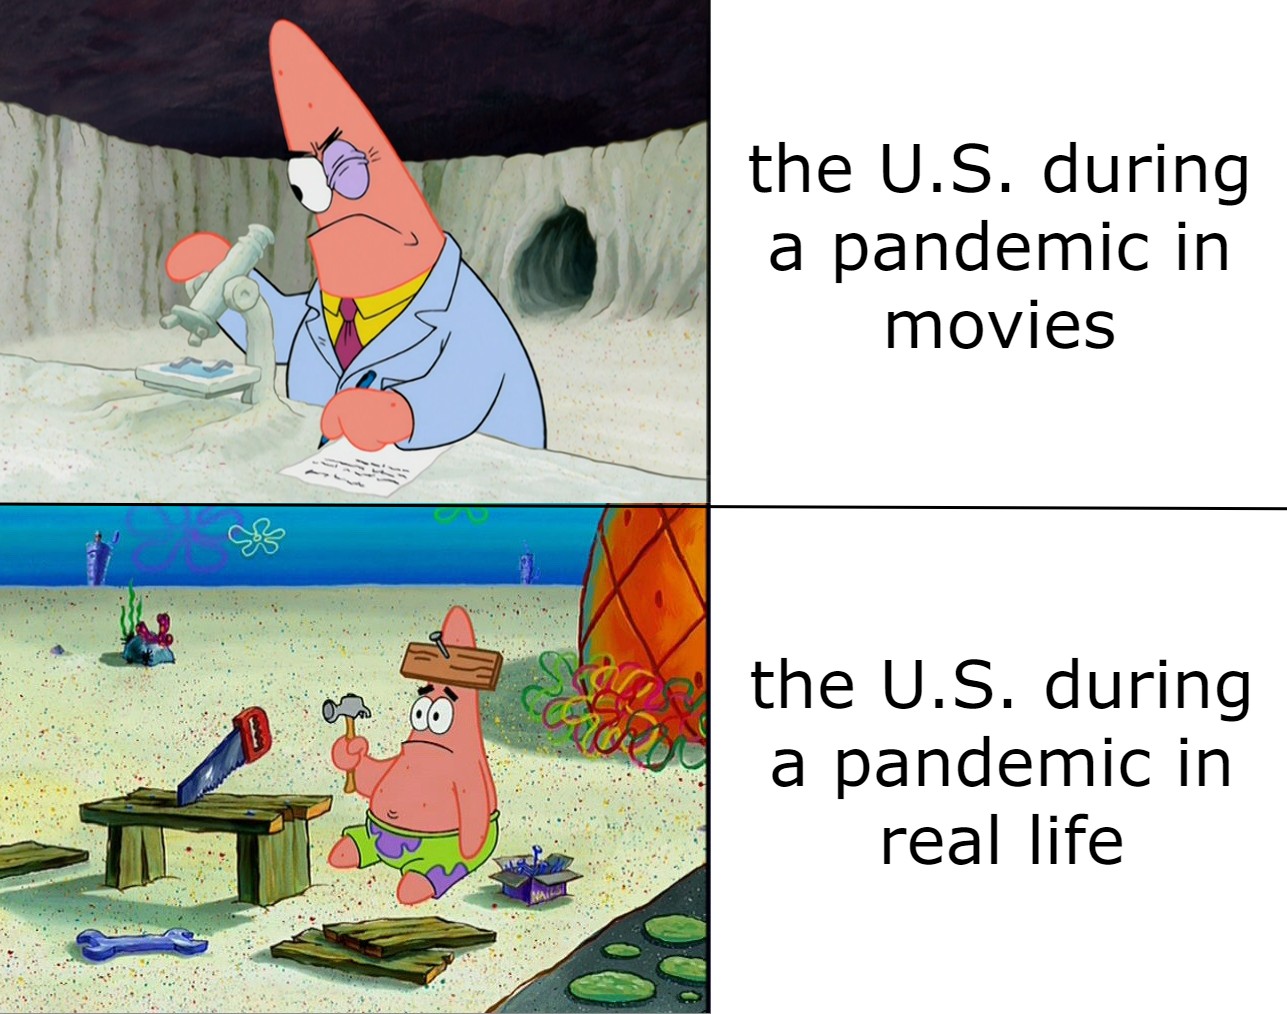 spongebob meme 2020- patrick star funny - the U.S. during a pandemic in movies the U.S. during a pandemic in real life